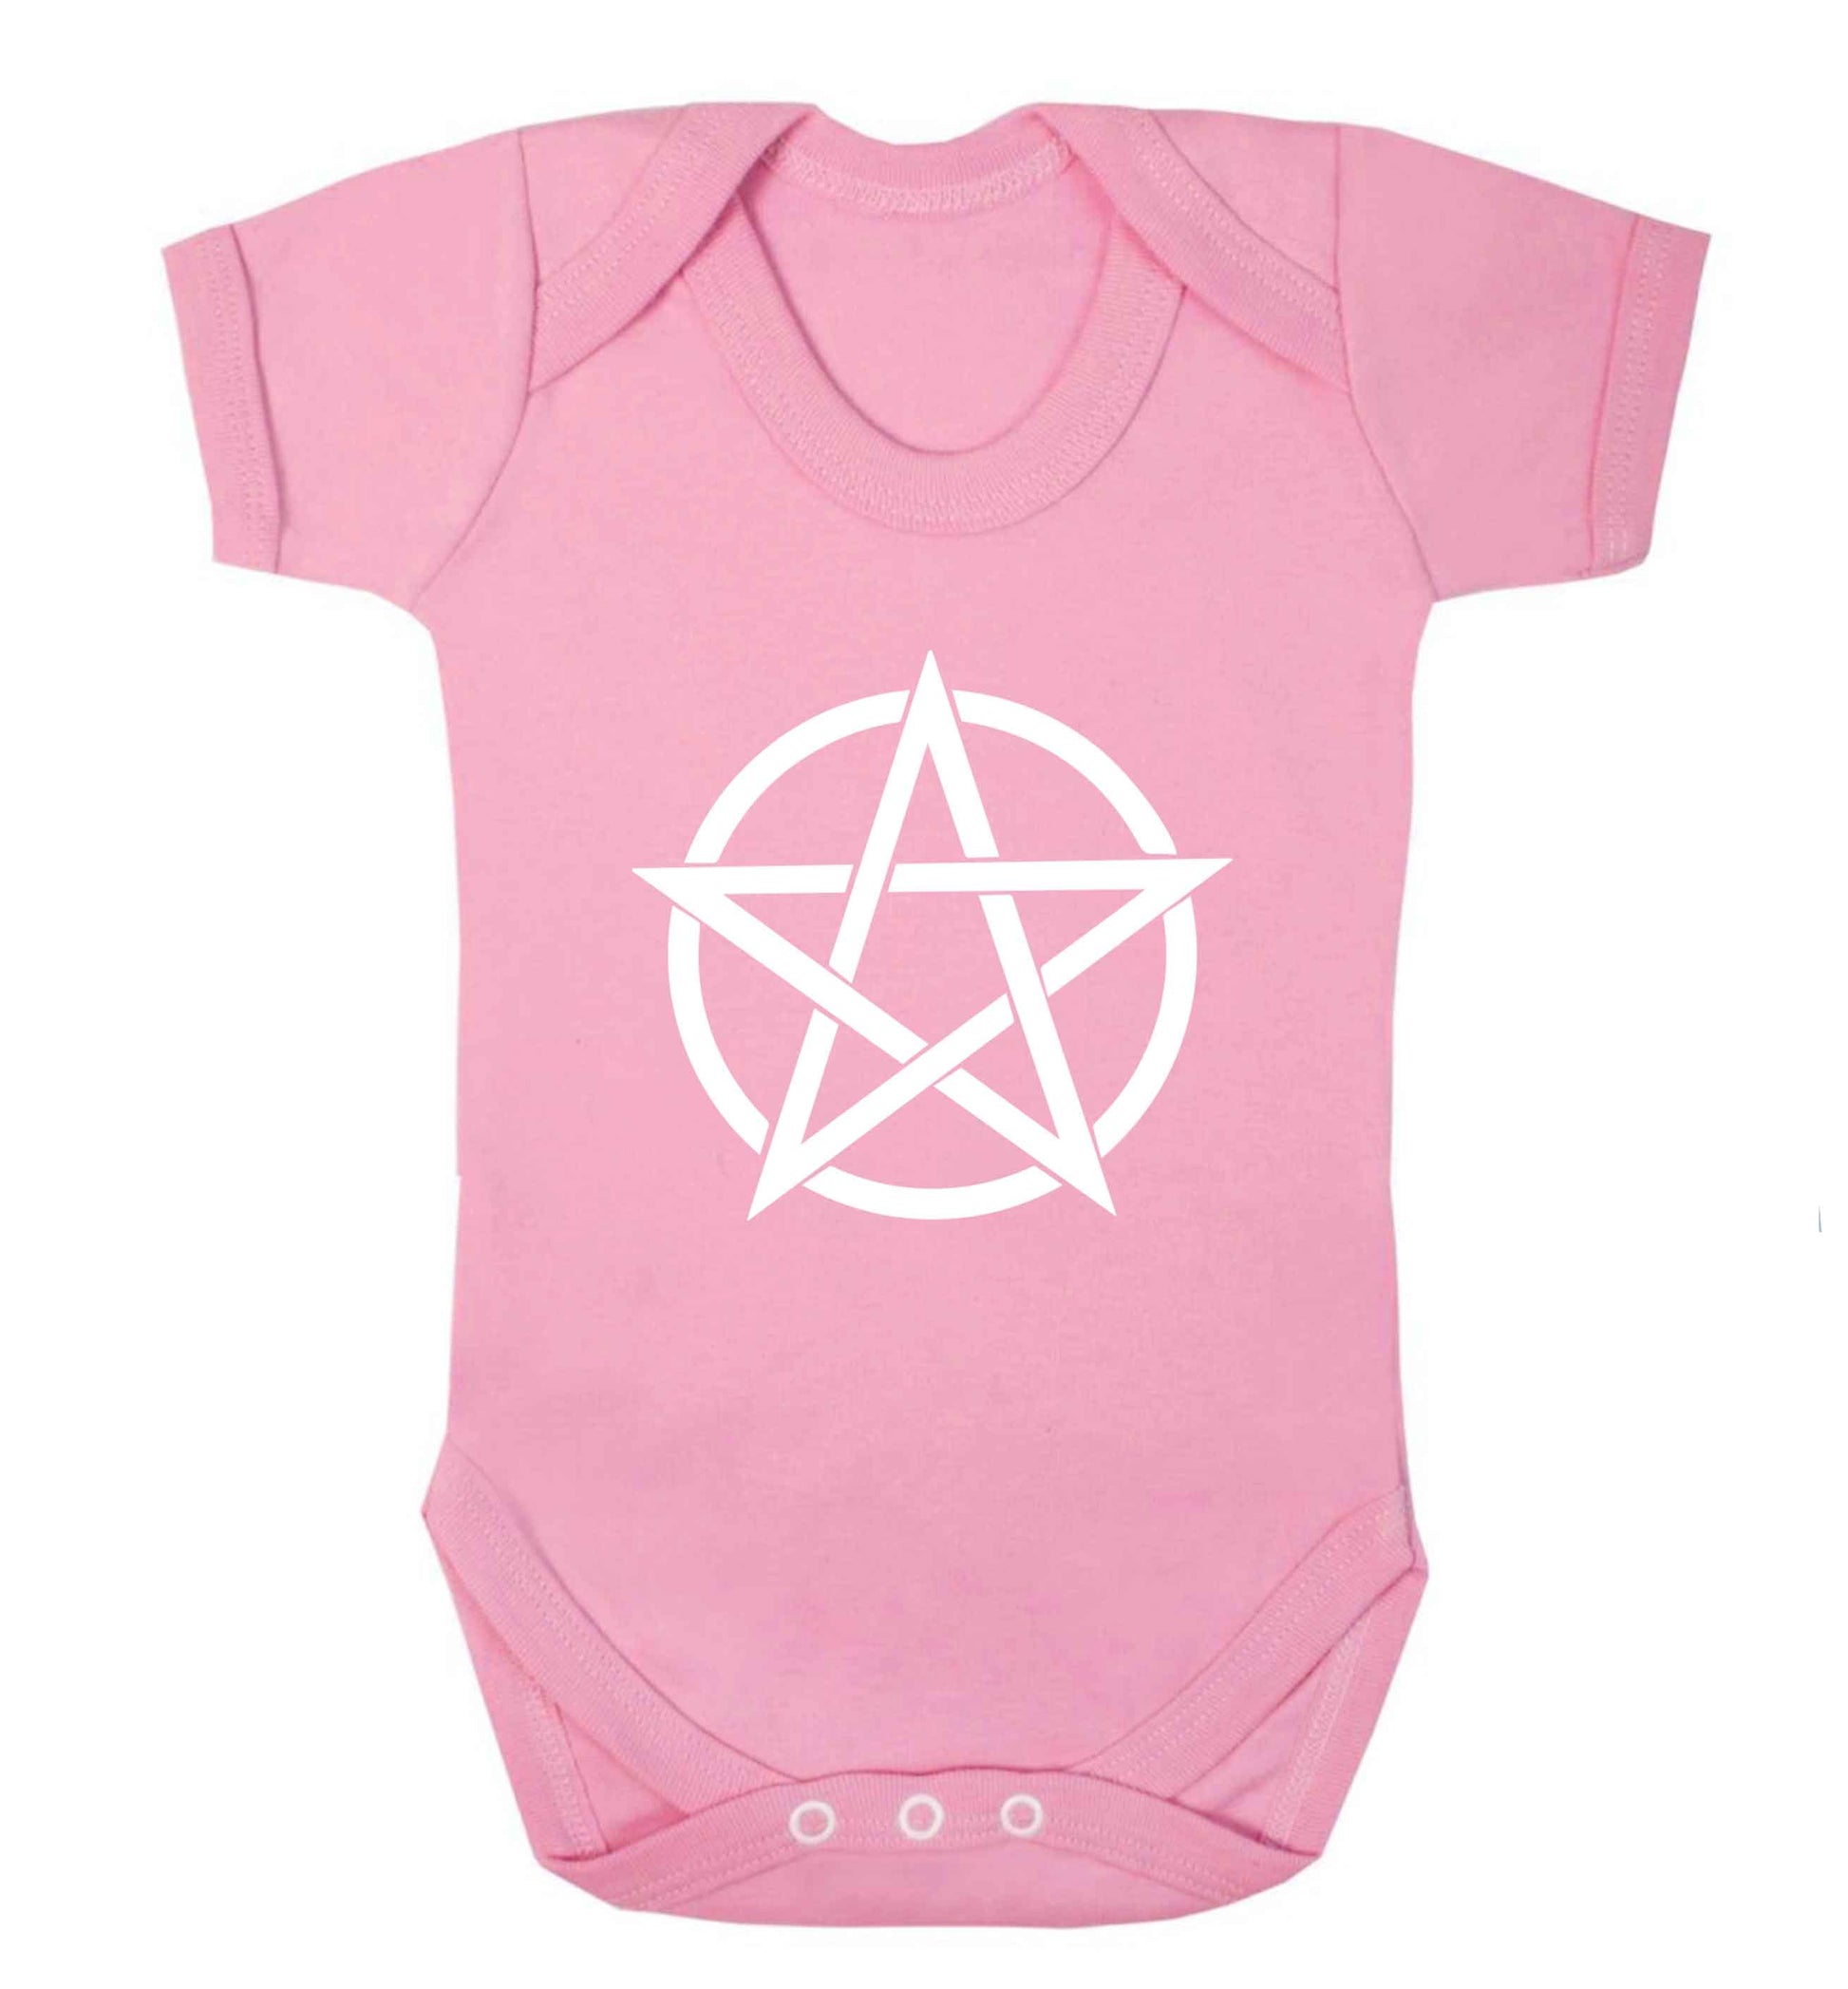 Pentagram symbol baby vest pale pink 18-24 months